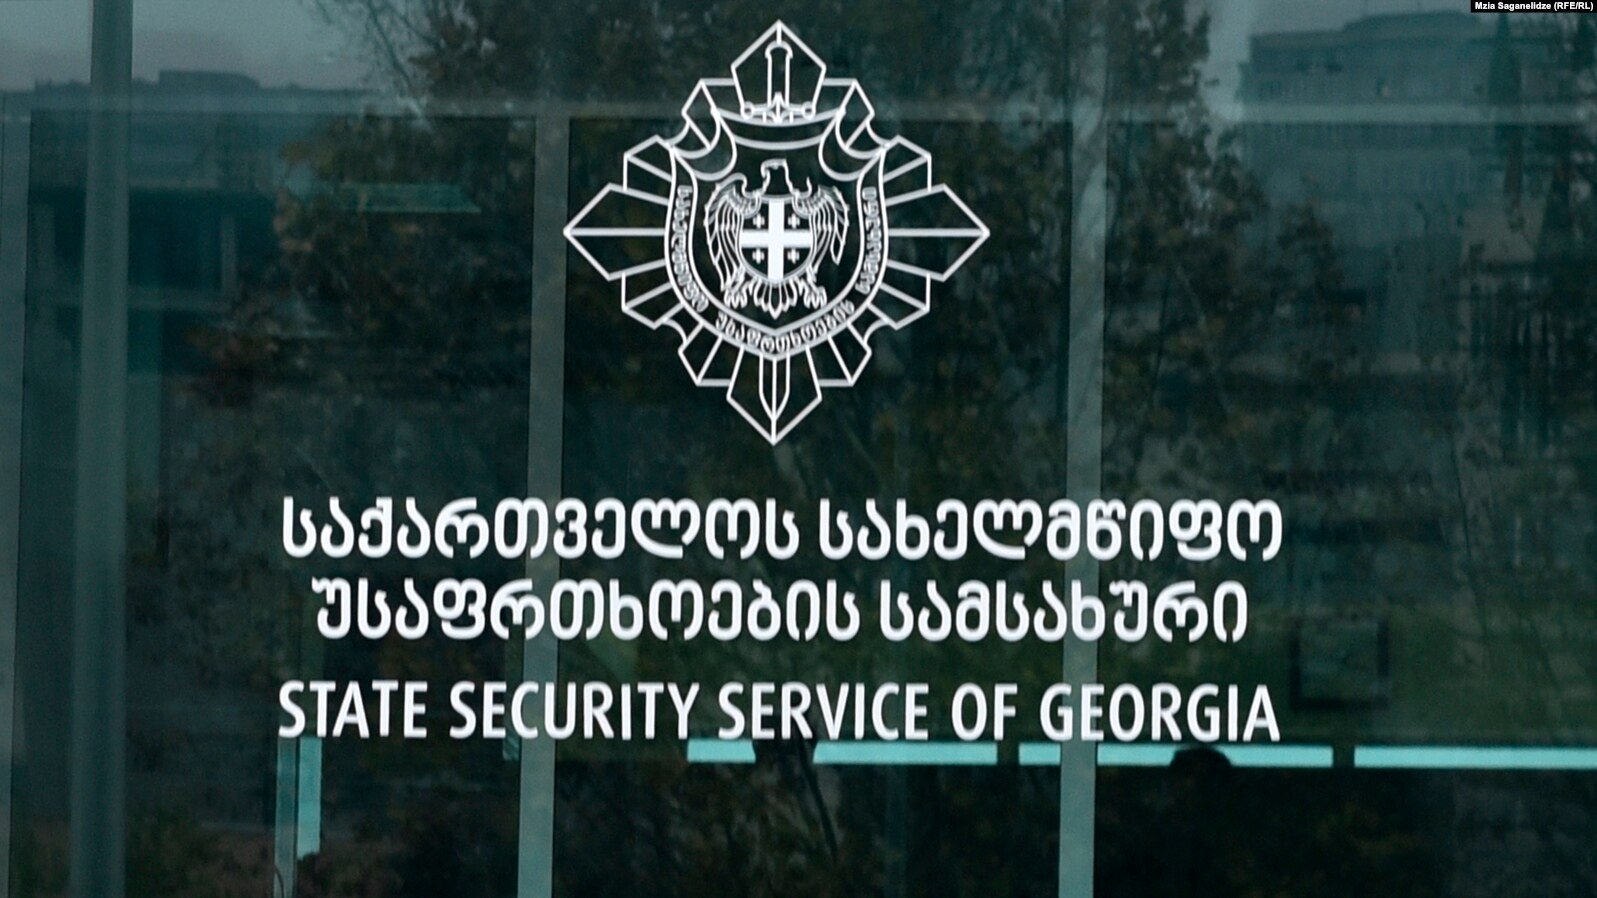 Վրաստանի պետական ​​անվտանգության ծառայությունը հերքում է լրագրող Գաբունայի՝ ԻՊ-ի ենթադրյալ անդամների հետ ունեցած կապի մասին տեղեկությունը